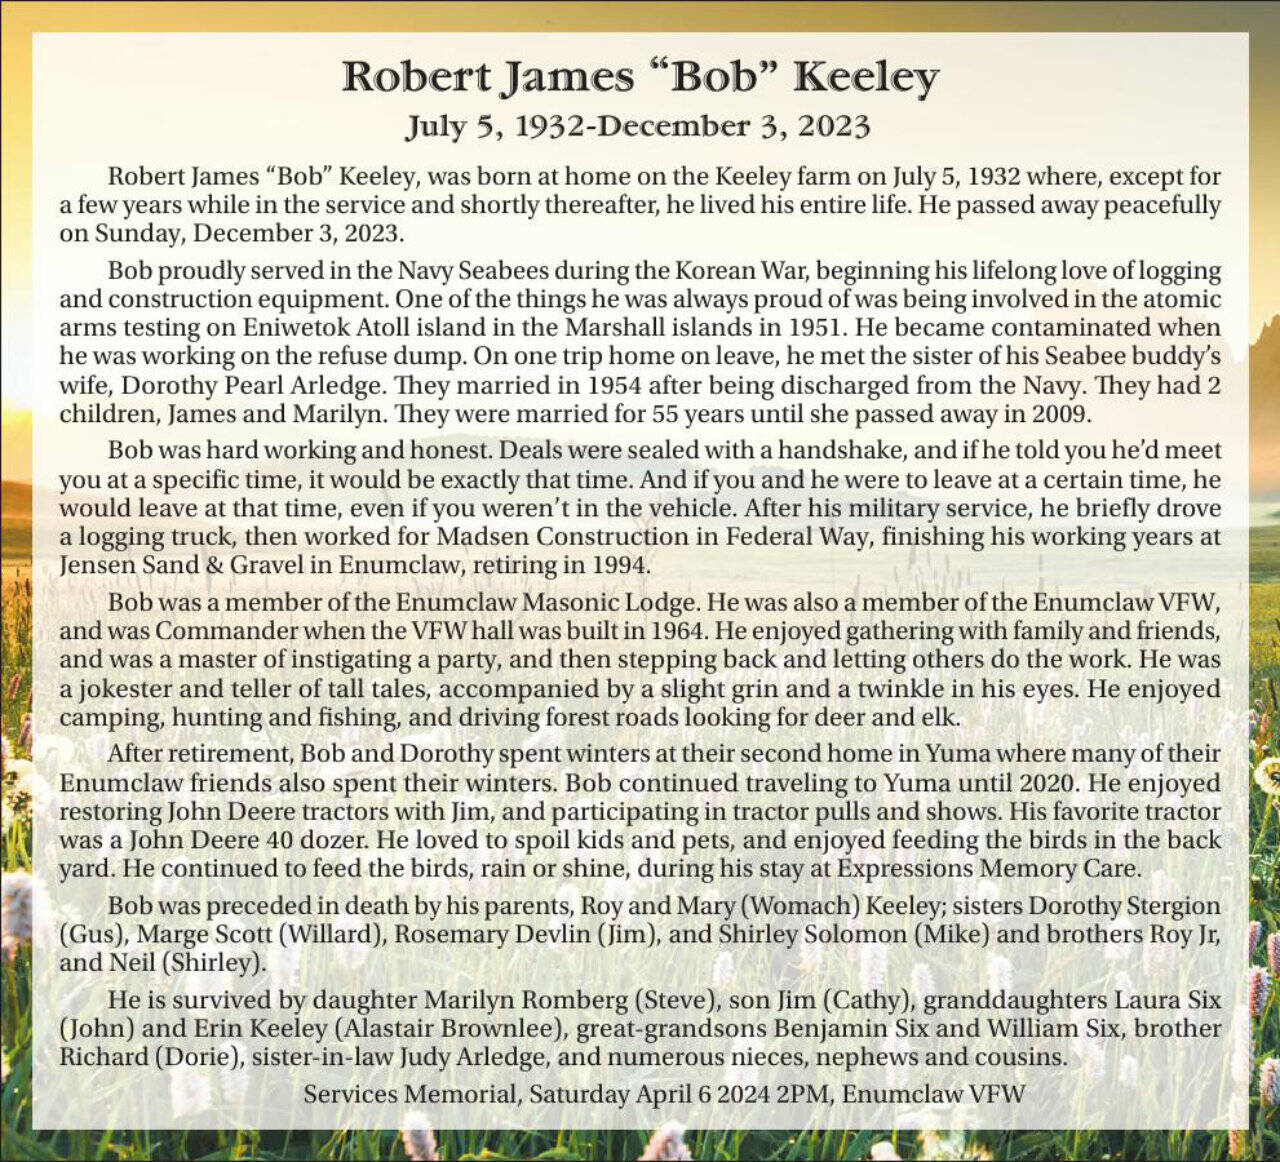 Robert Keeley